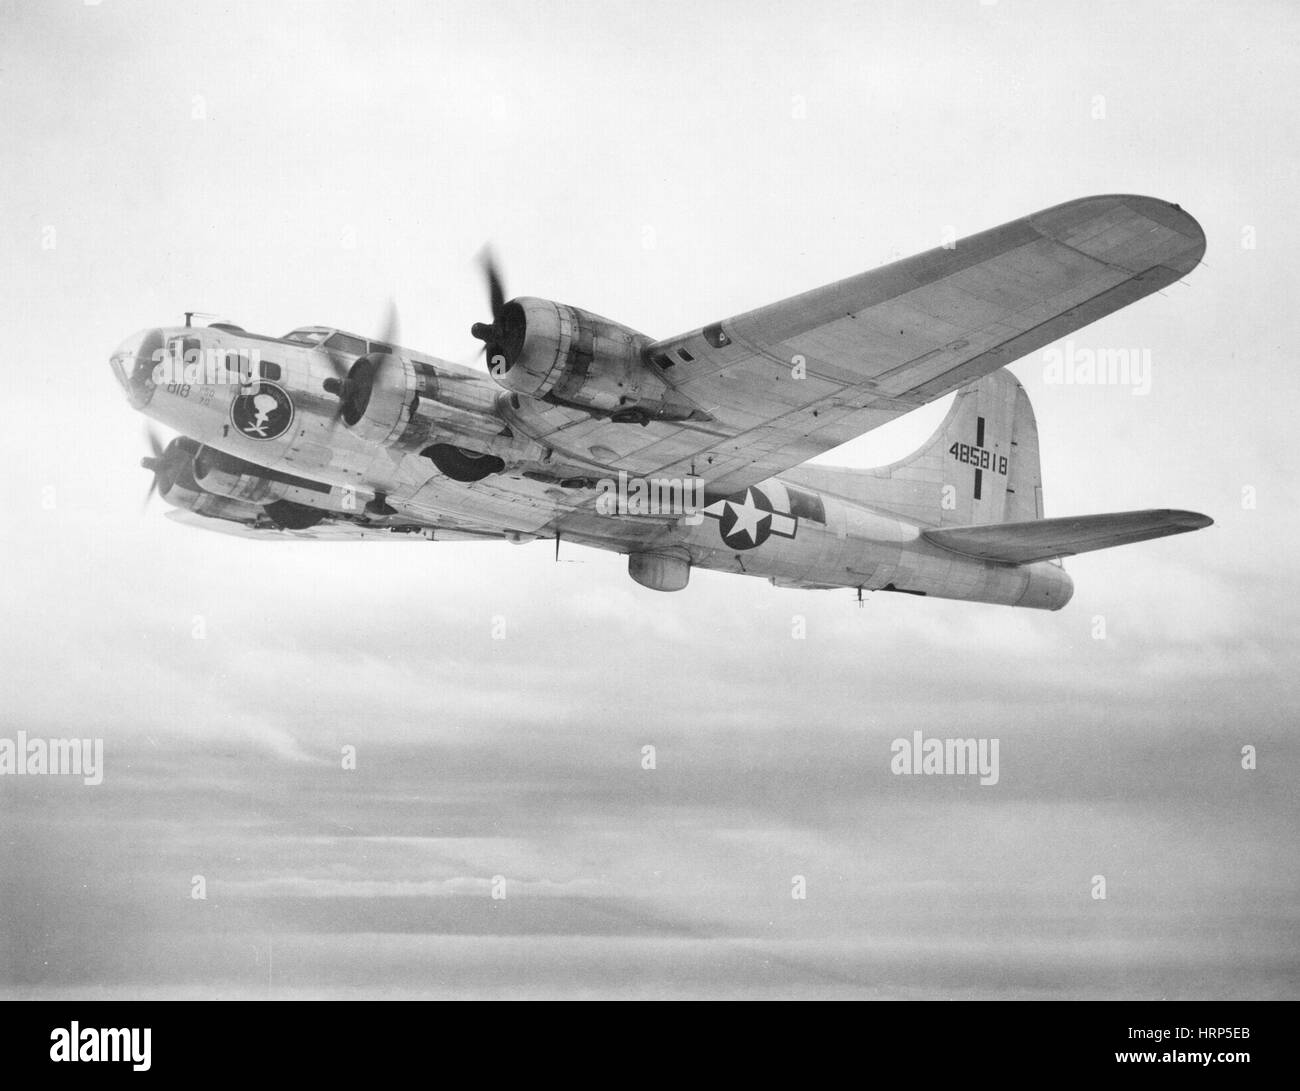 Dem zweiten Weltkrieg, Boeing B-17 Flying Fortress, 1940er Jahre Stockfoto